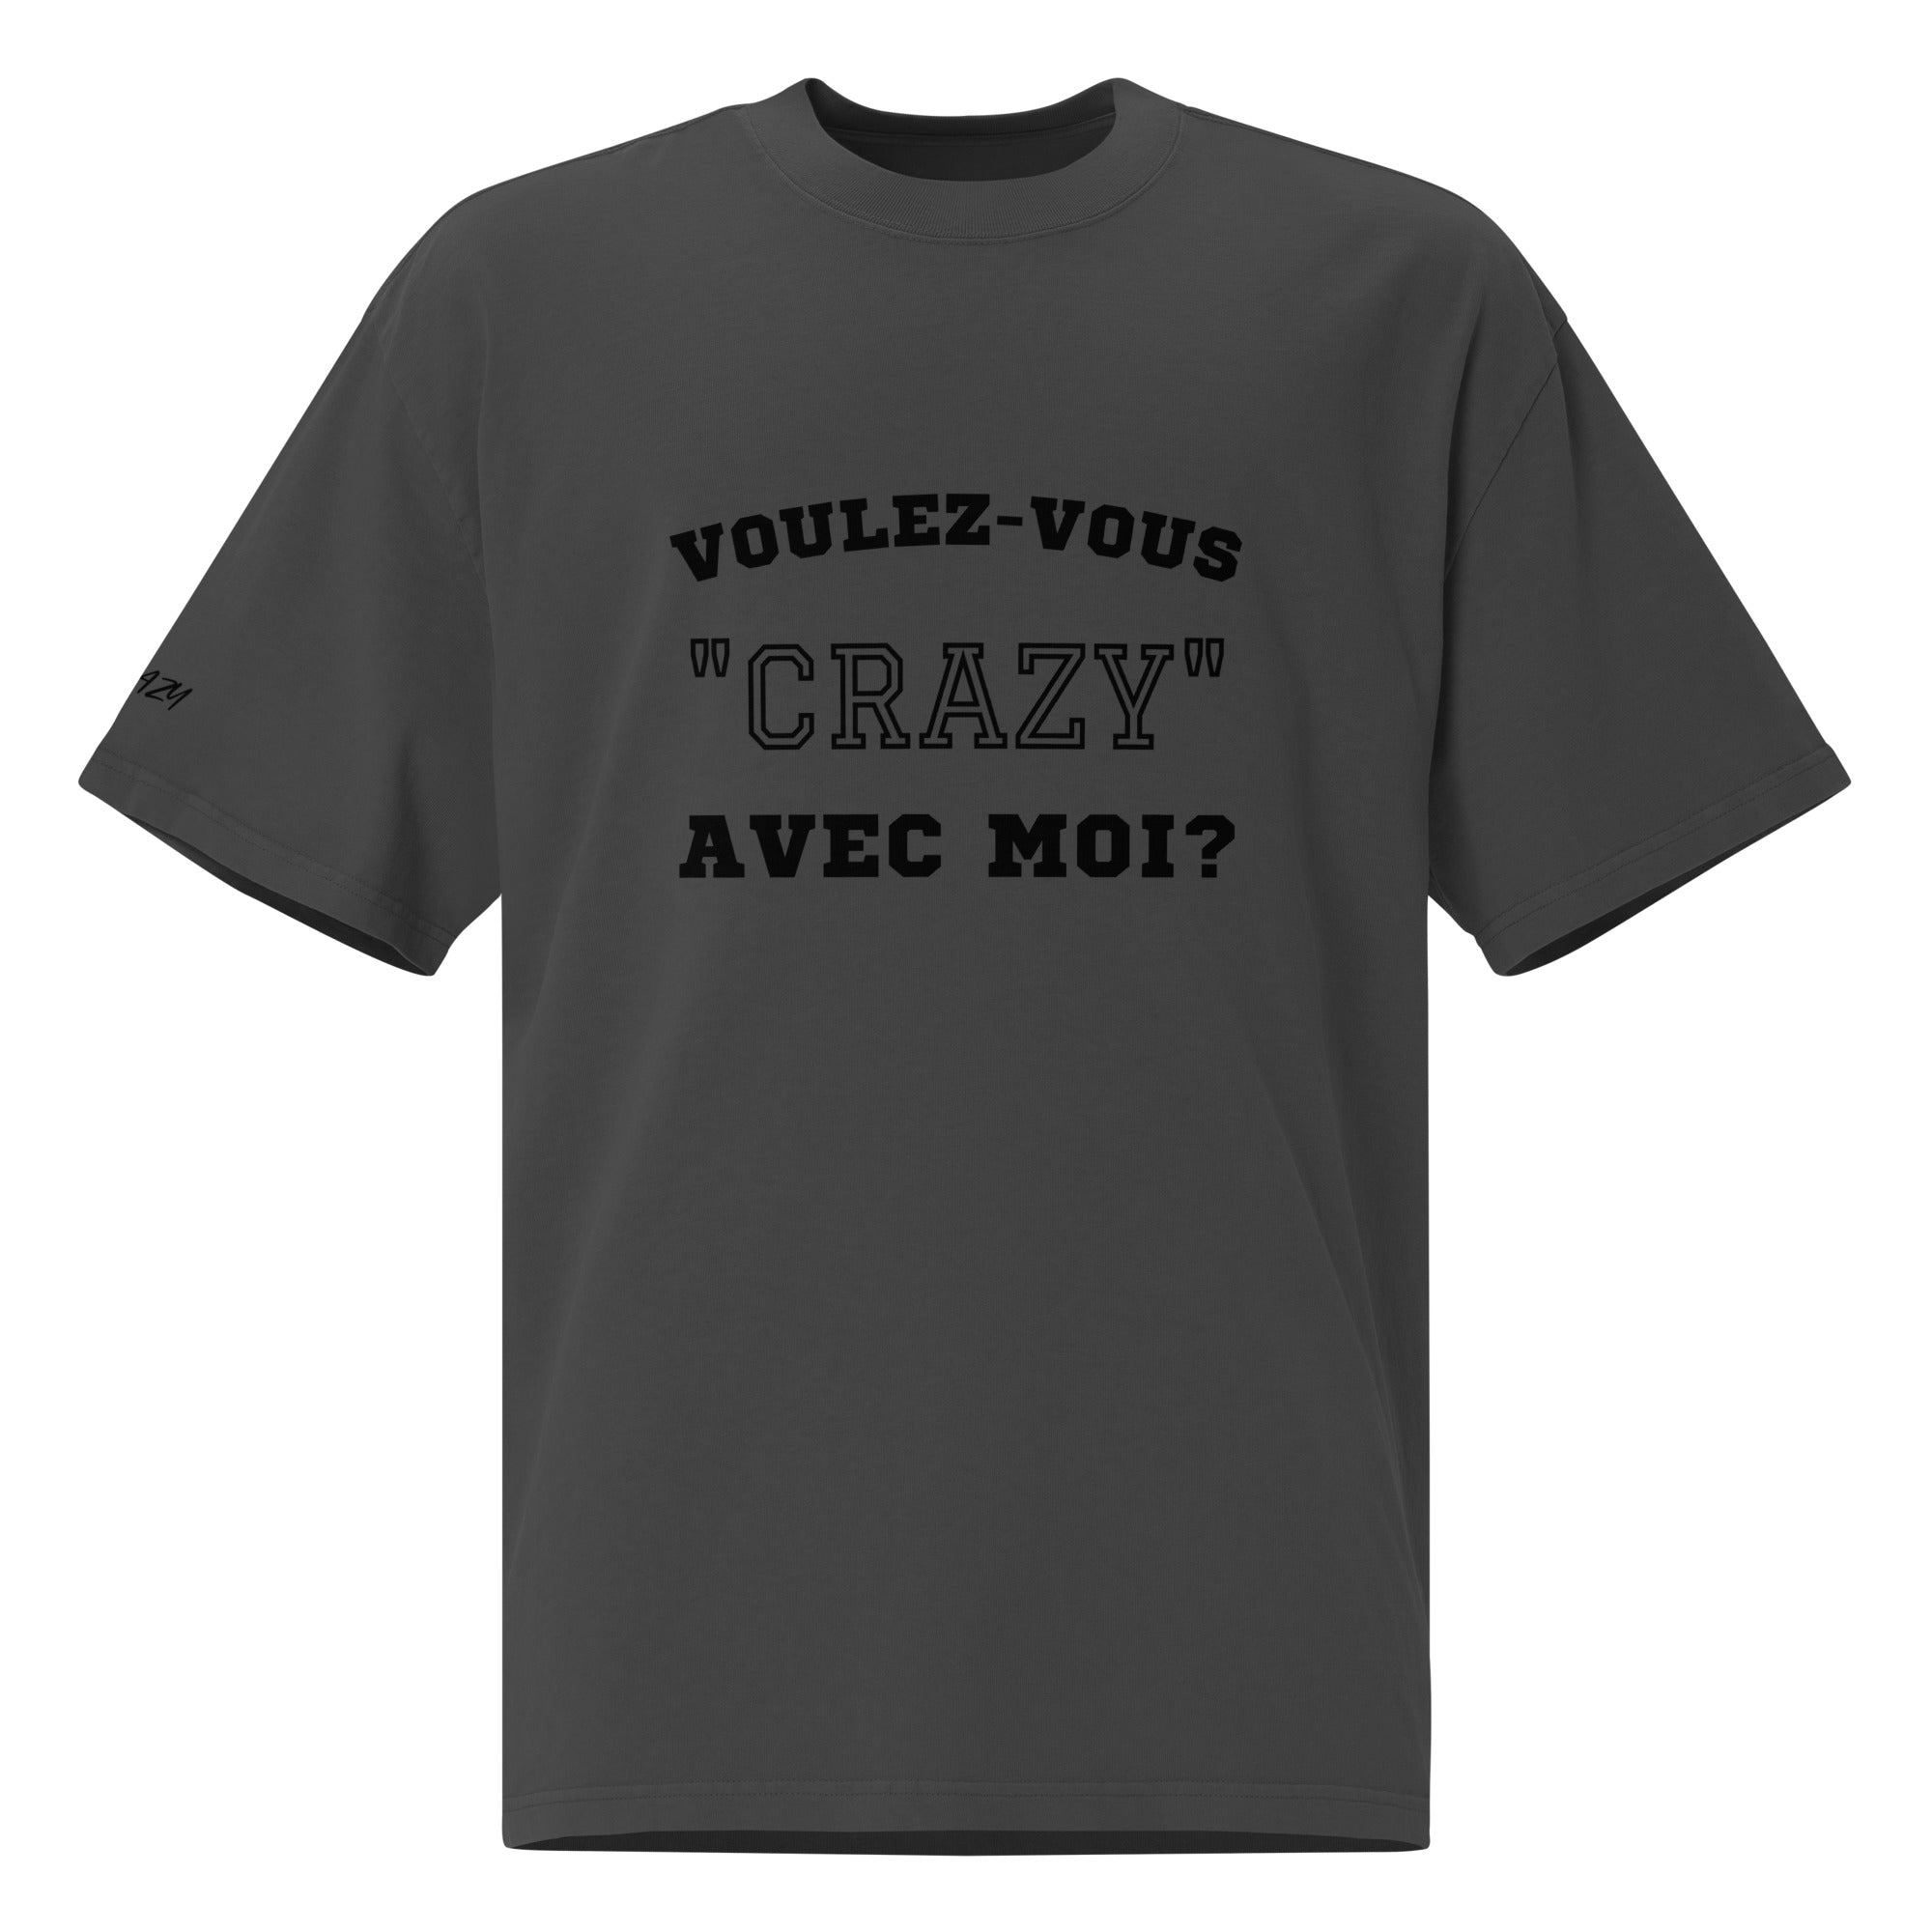 T-shirt oversize délavé "Voulez-vous..."